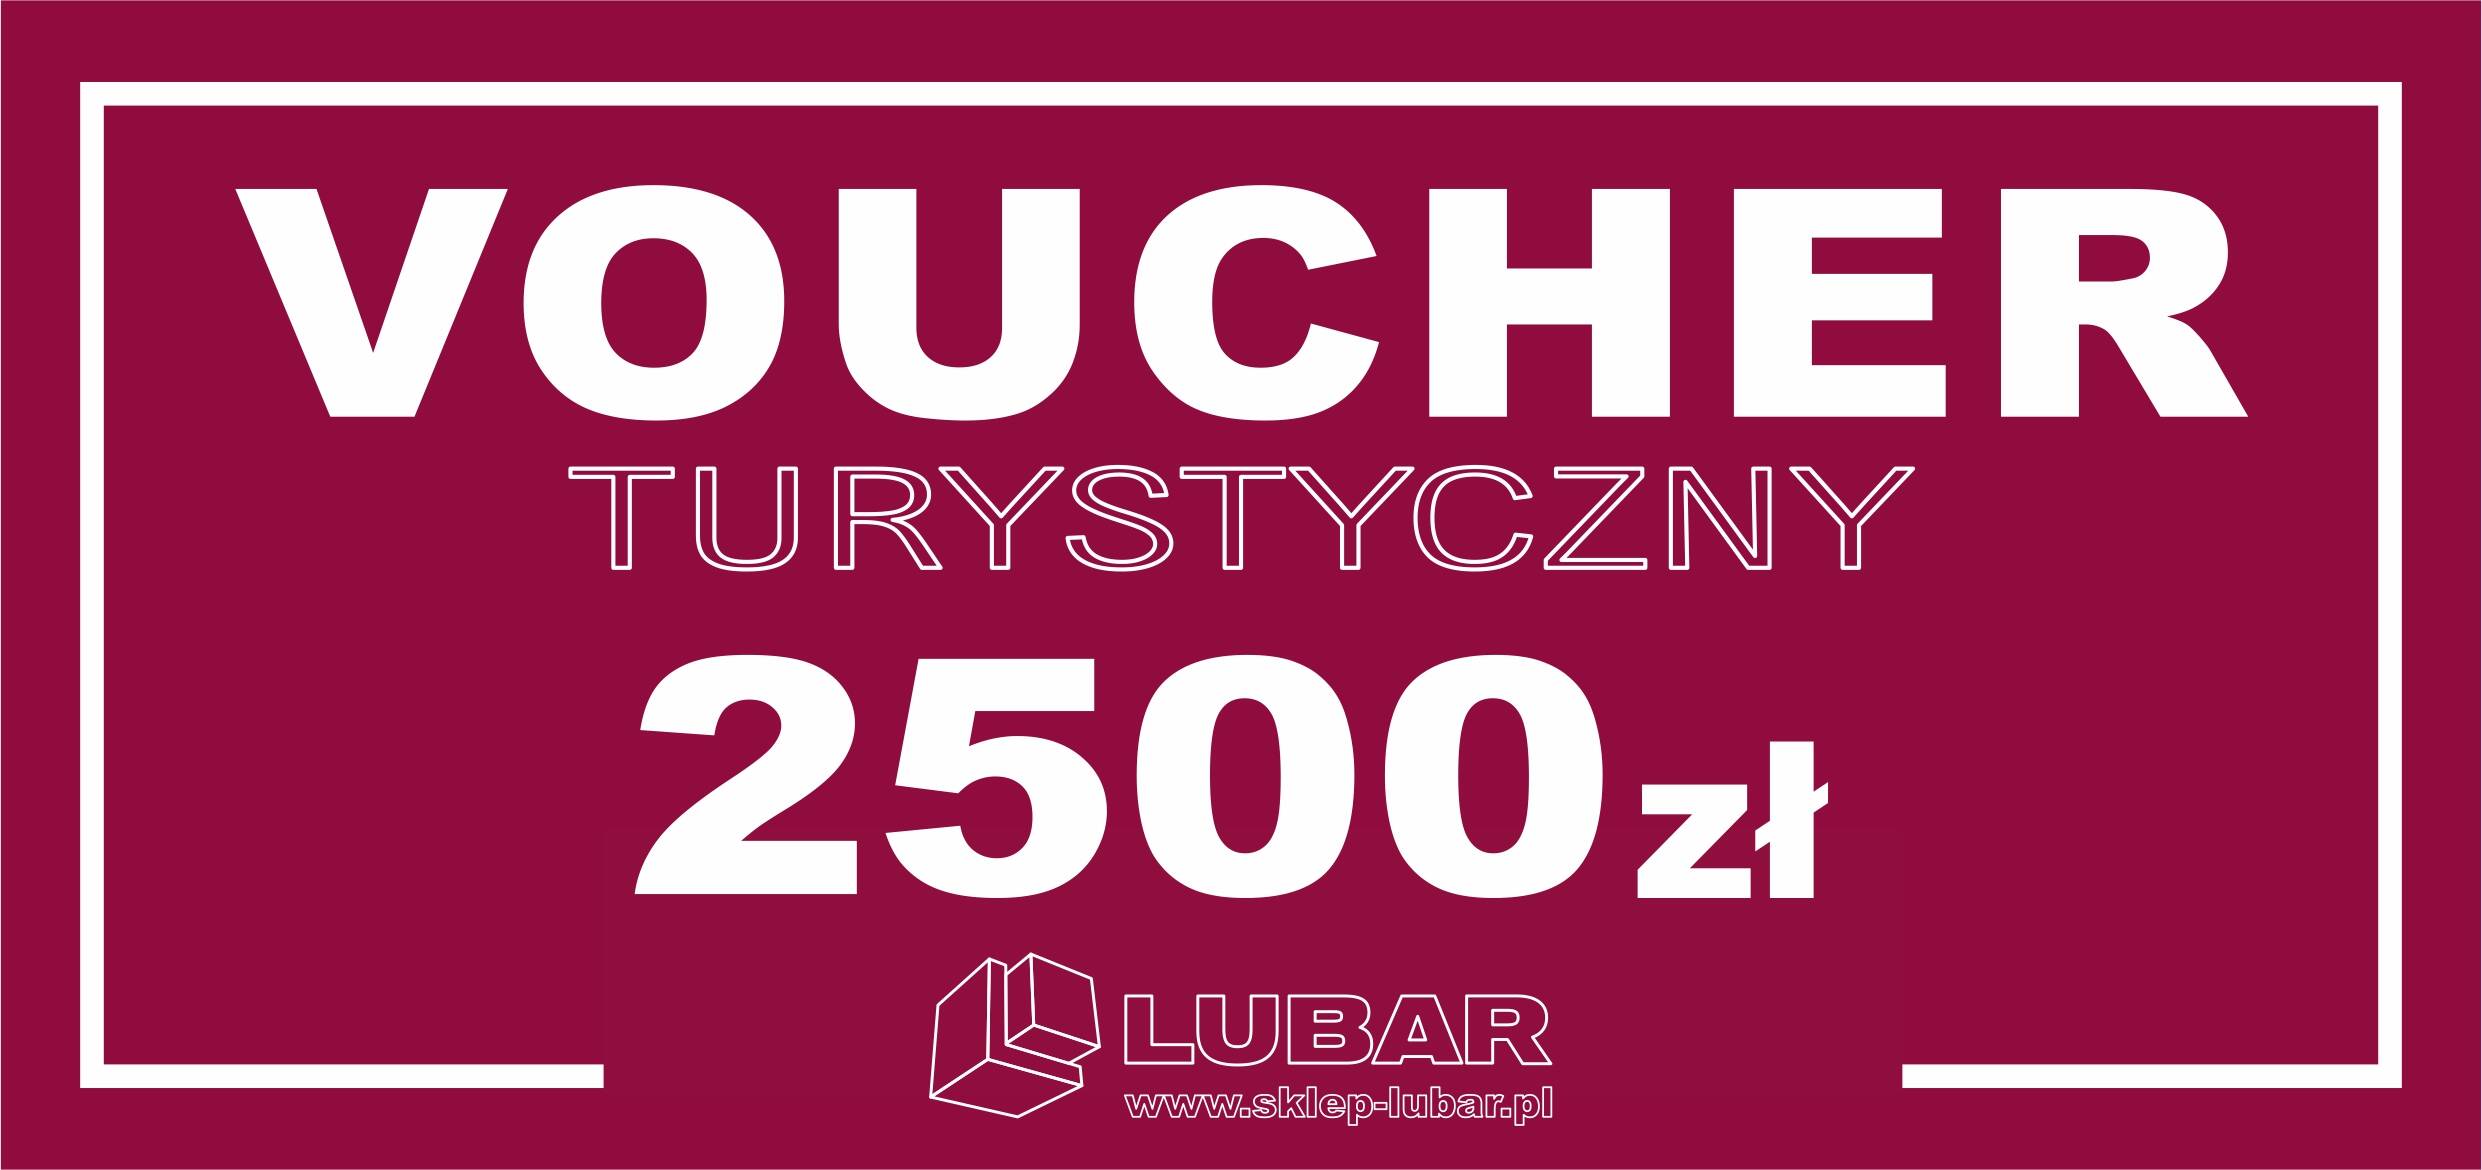 Voucher Turystyczny 2500 zł e-sklep LUBAR